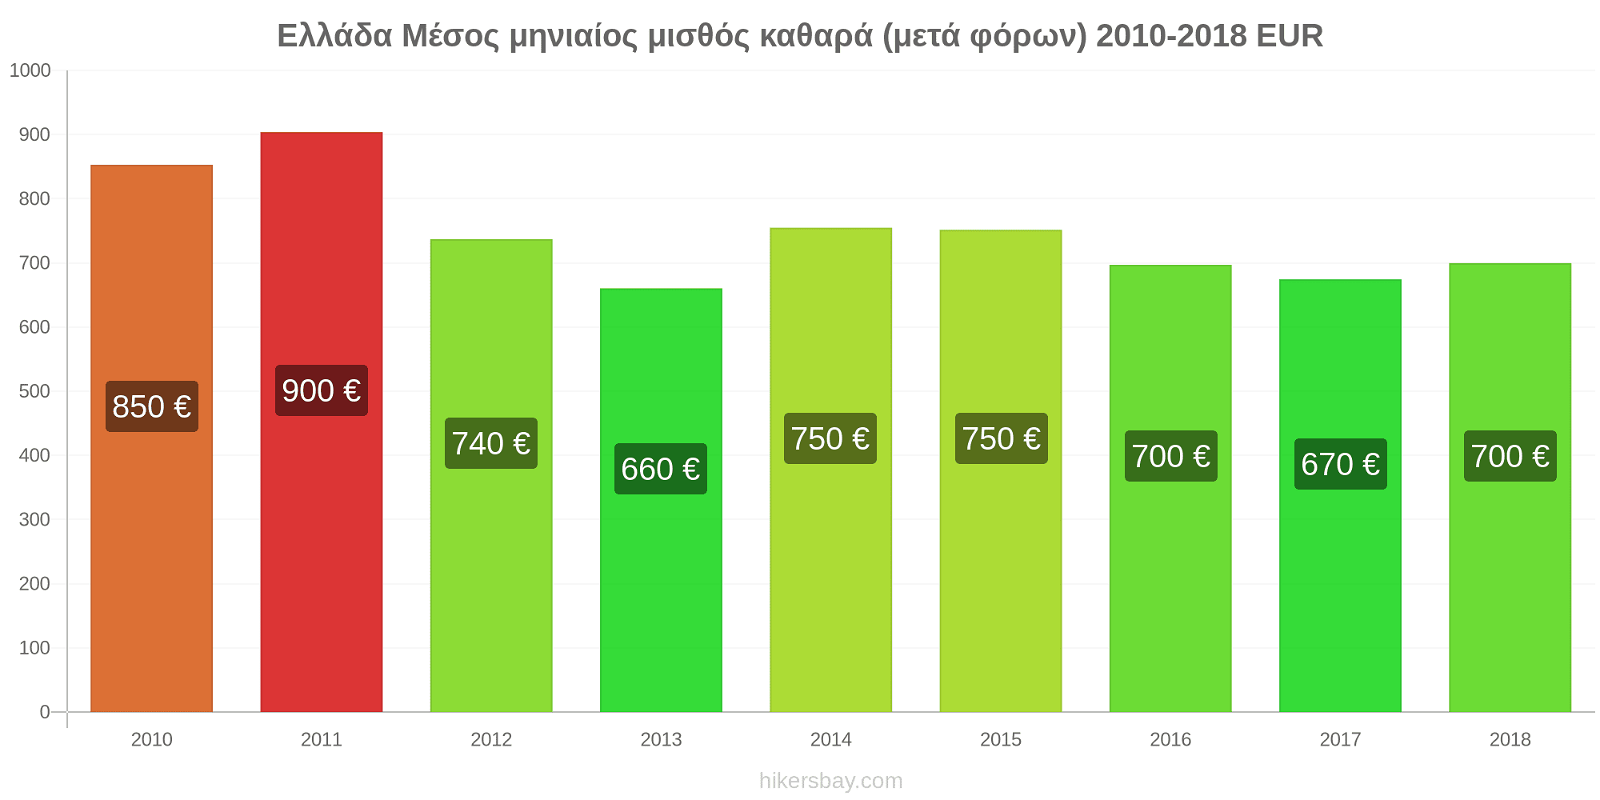 Ελλάδα αλλαγές τιμών Μέσος μηνιαίος μισθός καθαρά (μετά φόρων) hikersbay.com